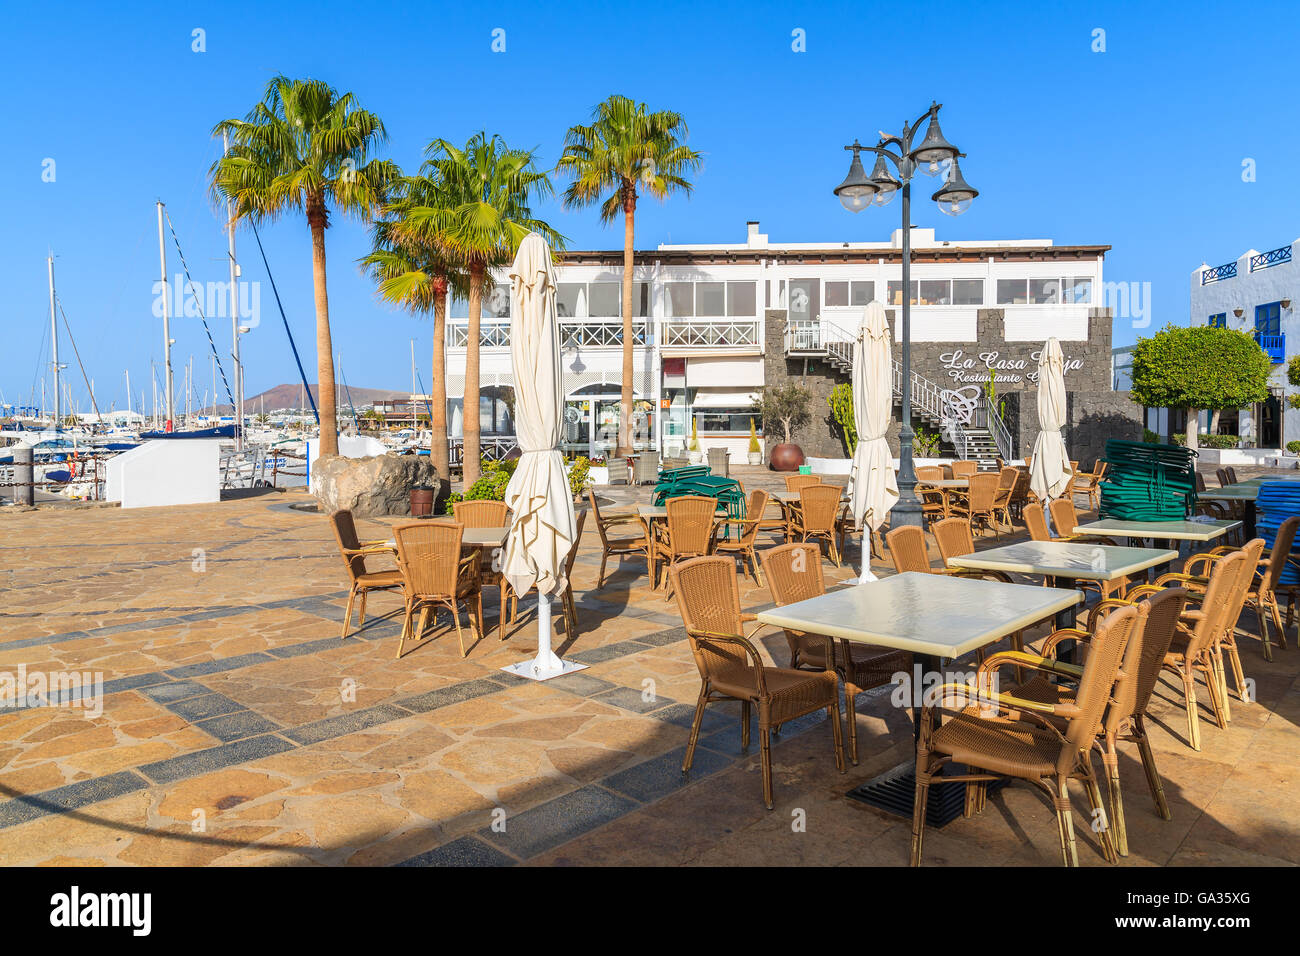 MARINA RUBICON, Lanzarote Island - Jan 11, 2015: ristorante tavoli in porta Rubicone, Playa Blanca città. Le isole Canarie sono meta di vacanze grazie al soleggiato clima tropicale. Foto Stock